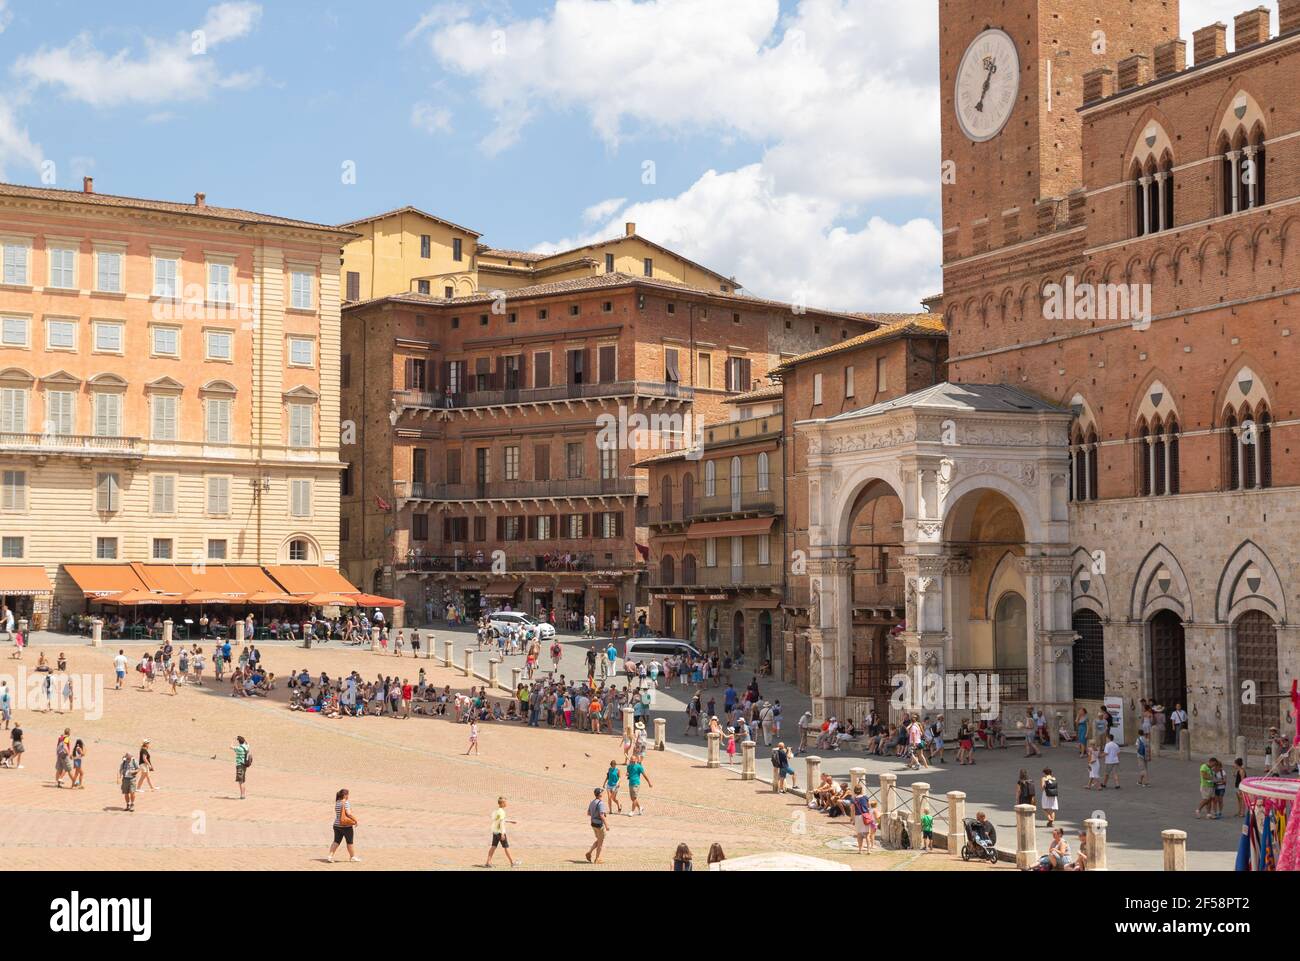 Plaza del Campo ist der wichtigste öffentliche Raum des historischen Zentrums von Siena, Toskana, Italien Stockfoto